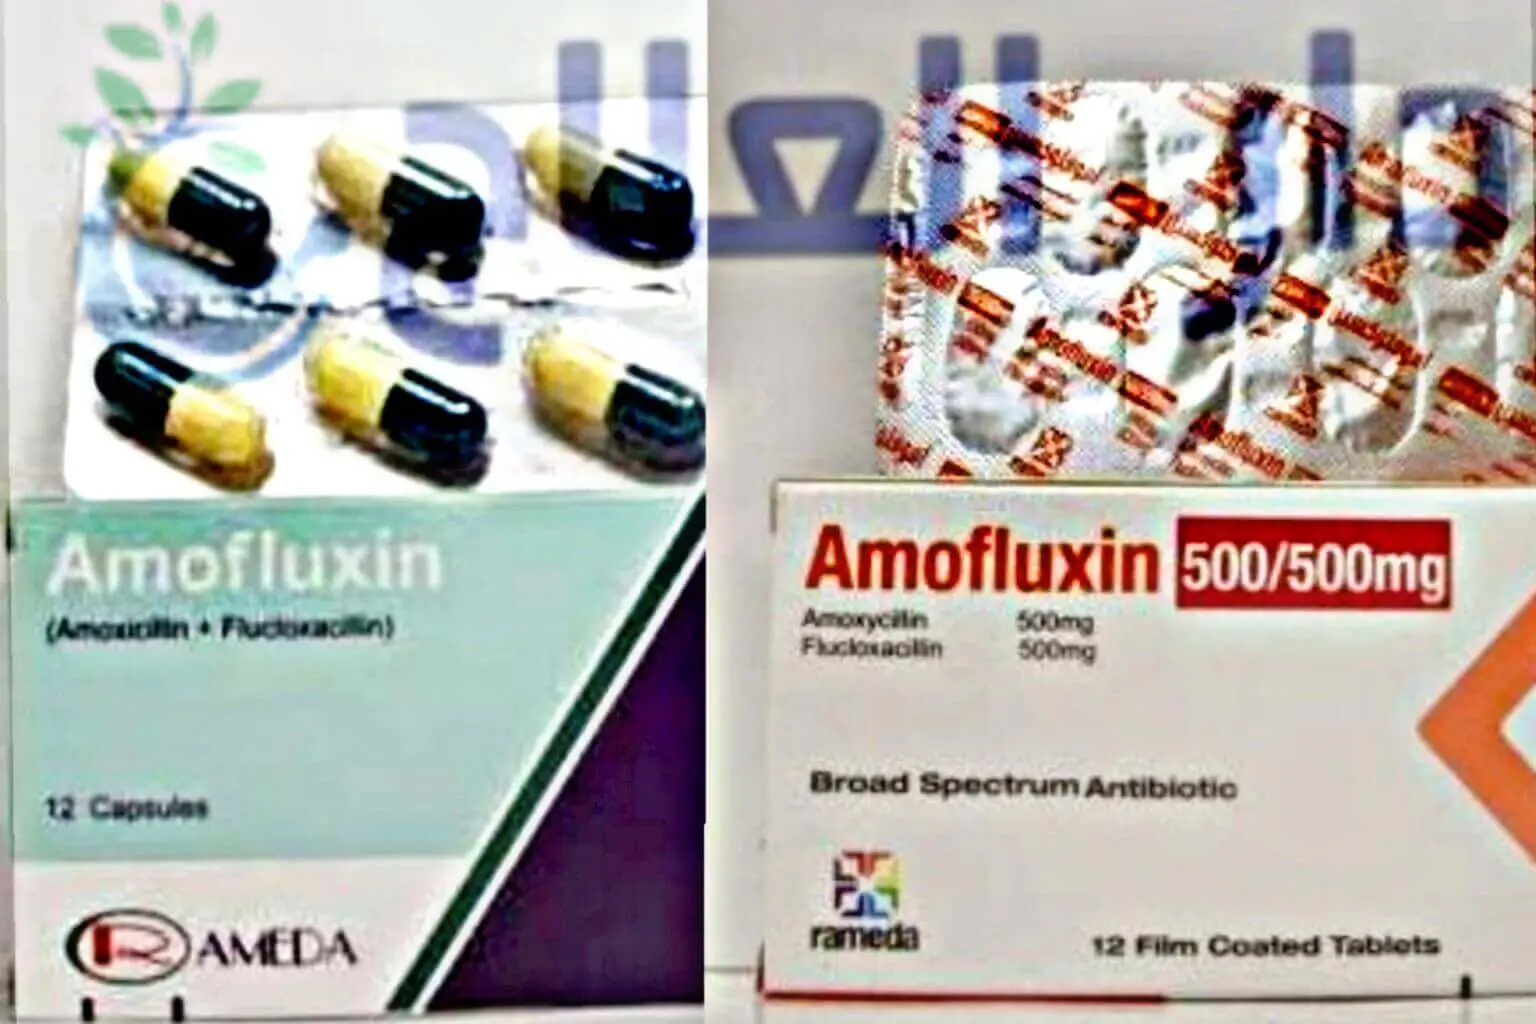 اموفلوكسين - دواء اموفلوكسين - برشام اموفلوكسين - كبسول اموفلوكسين - اقراص اموفلوكسين - حبوب اموفلوكسين - Amofluxin